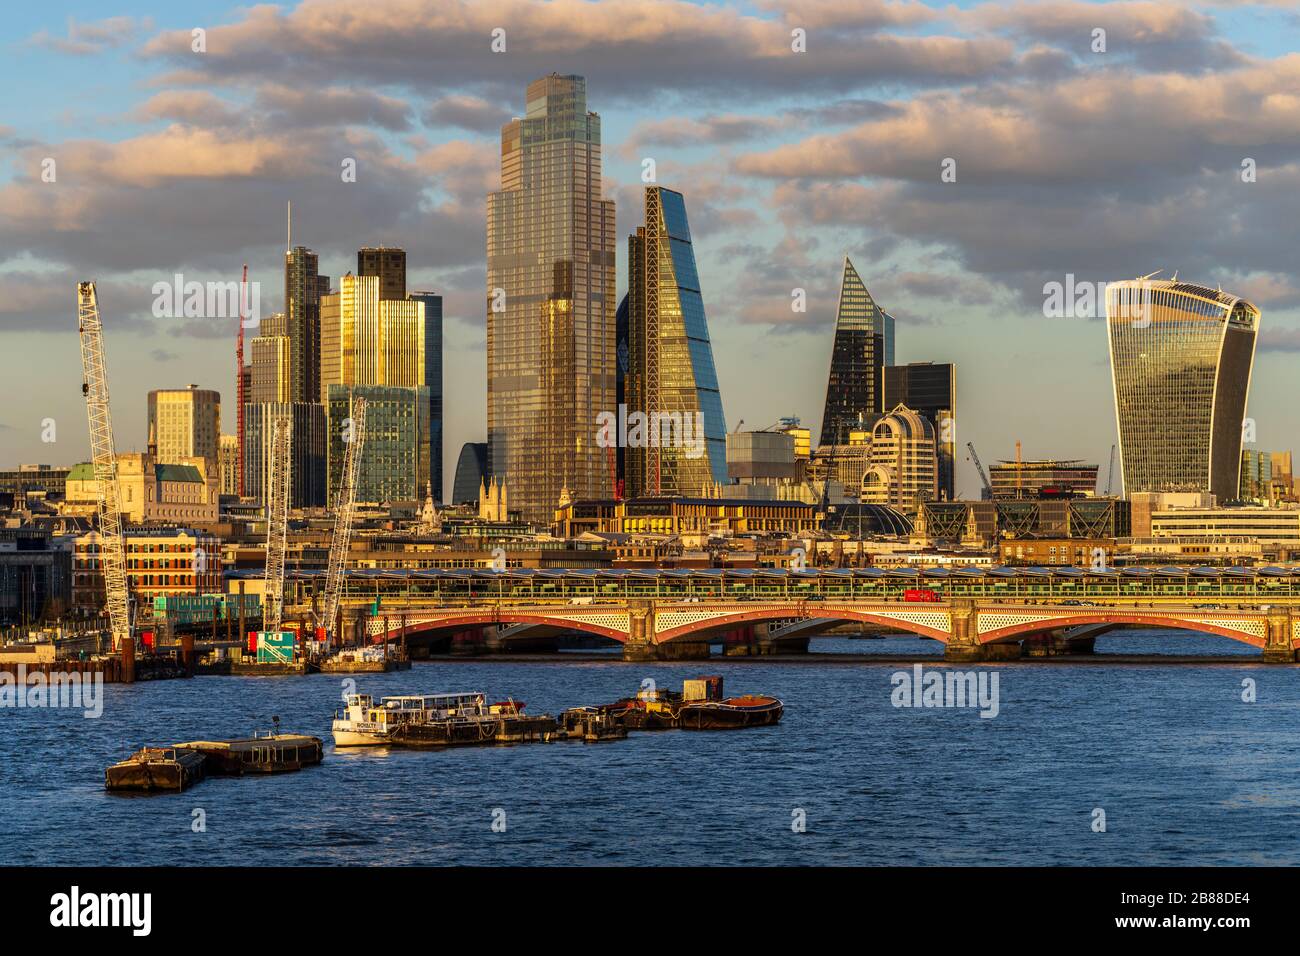 City of London Financial District Skyscrapers et nouveaux bâtiments de l'autre côté de la Tamise. Thames Riverscape. London Riverscape. Banque D'Images